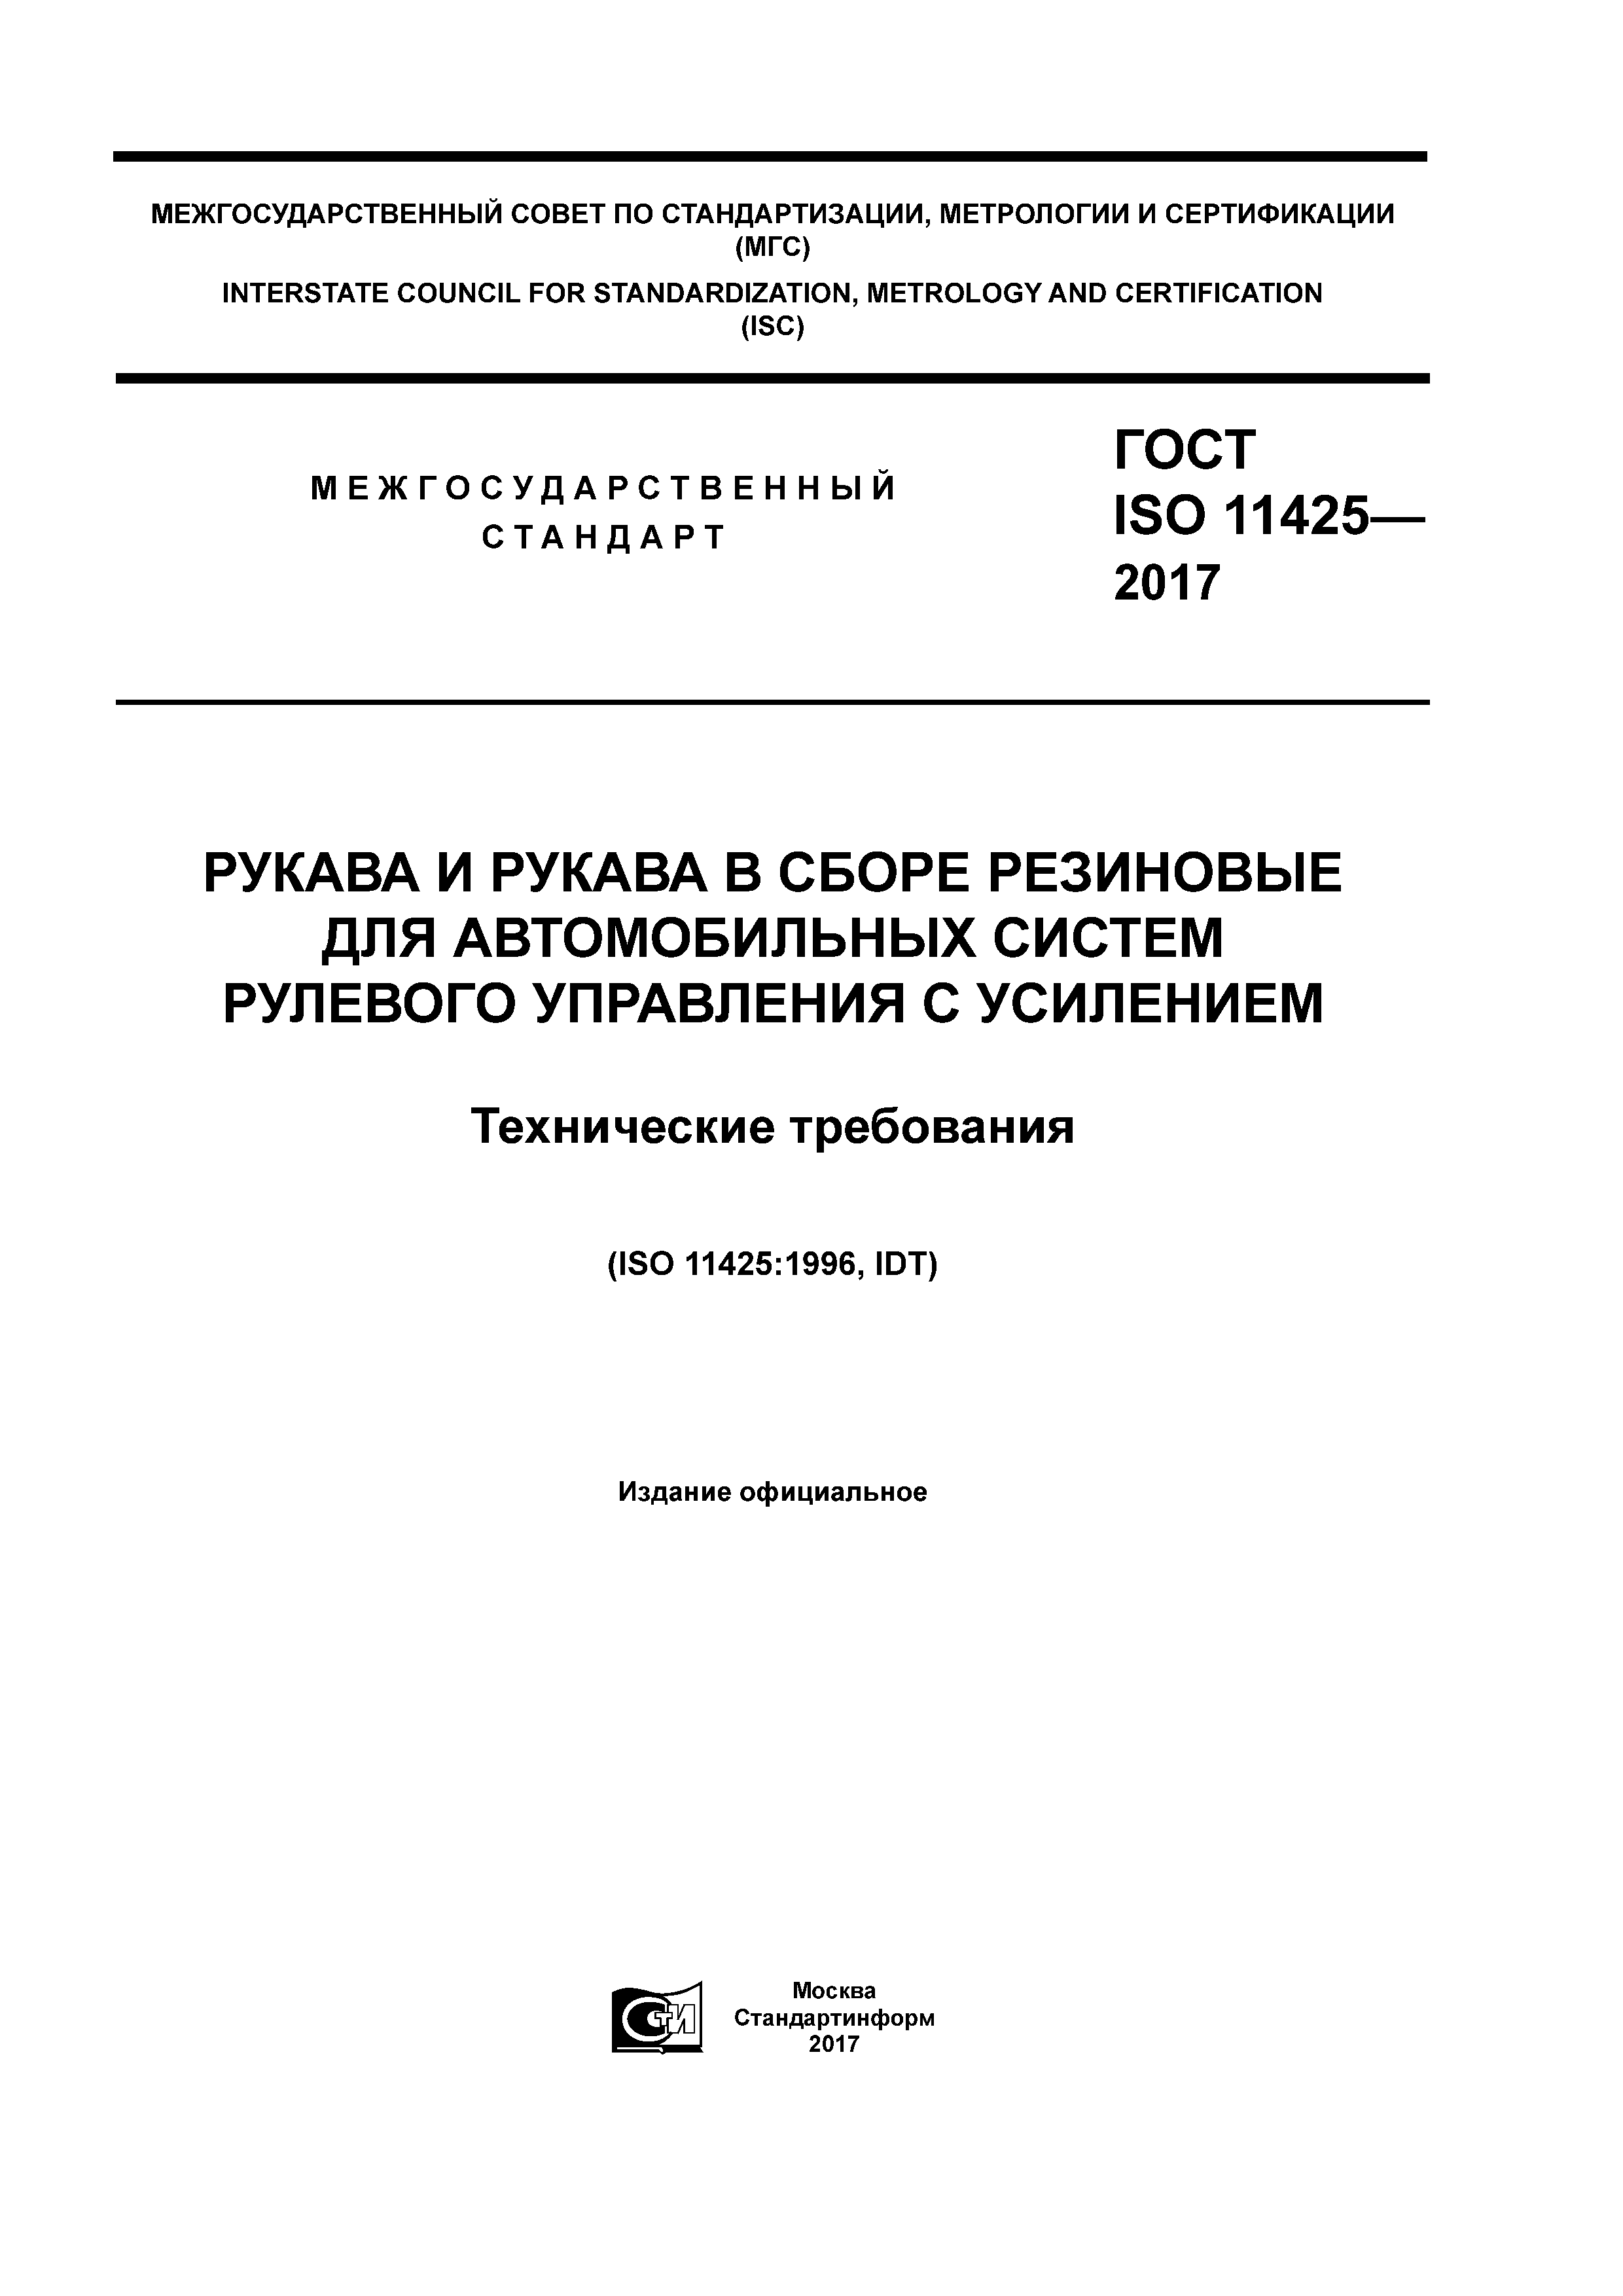 ГОСТ ISO 11425-2017